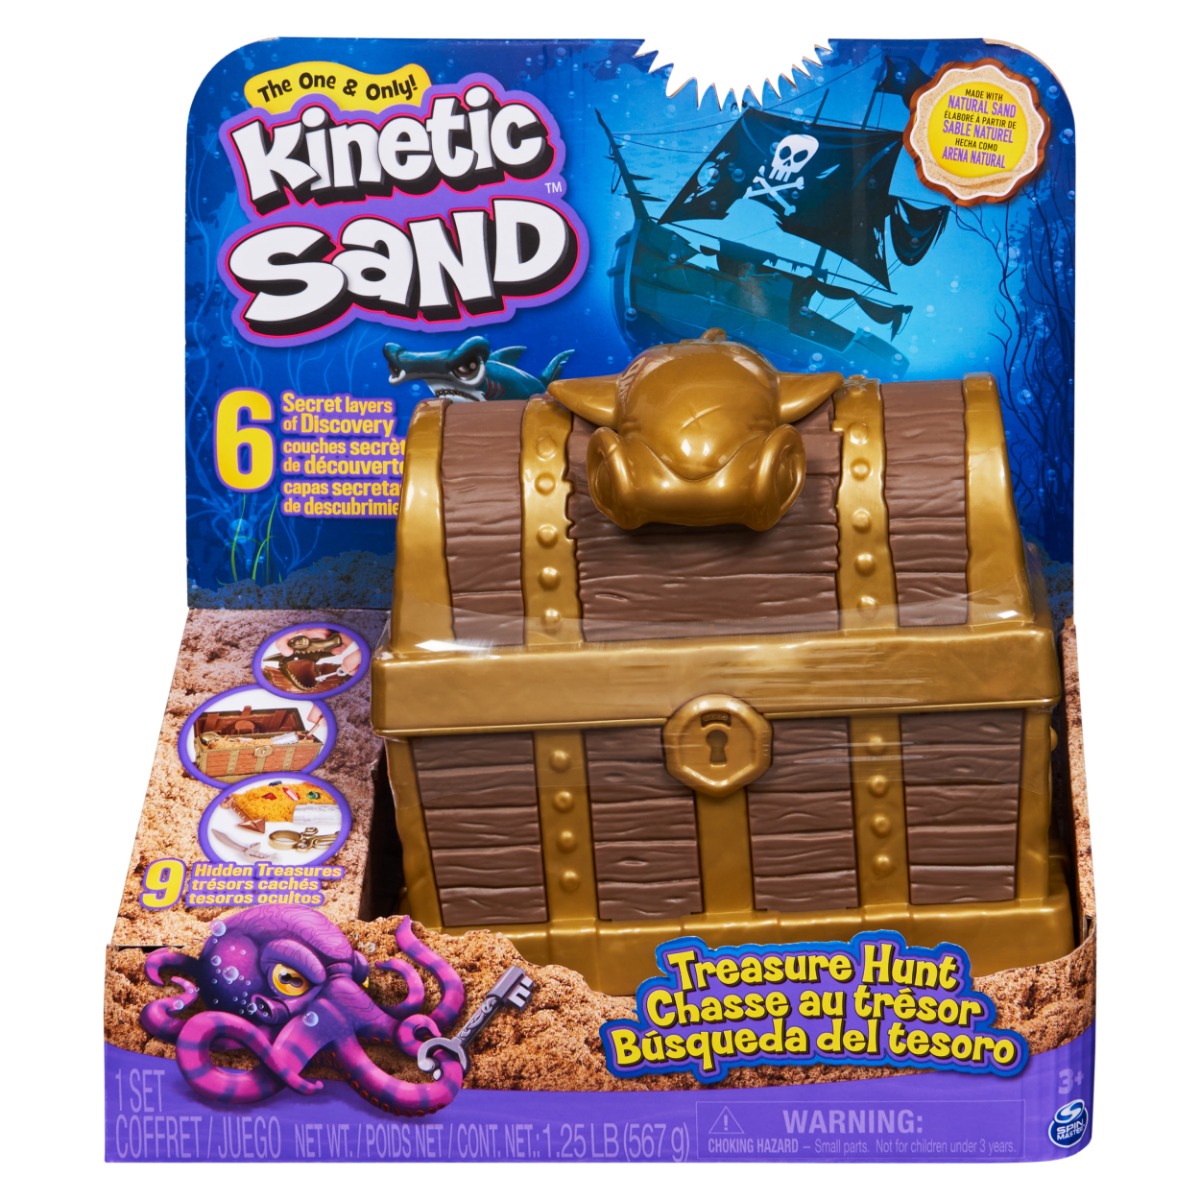 Nisip kinetic in cufar, Kinetic Sand, 20133533